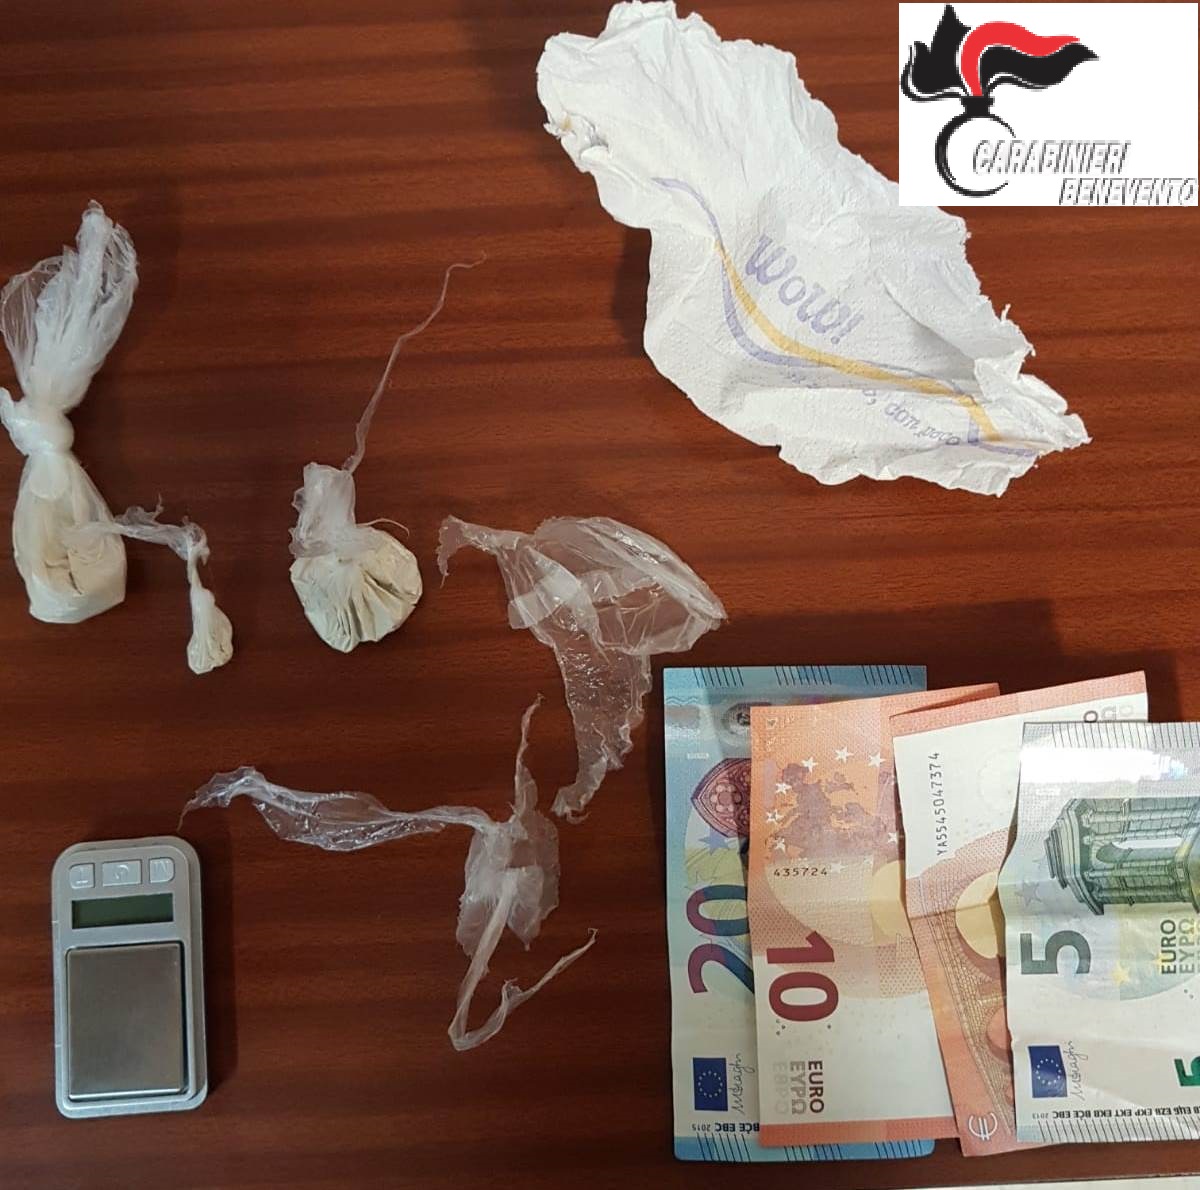 Benevento| I Carabinieri beccano dipendente Asia con droga